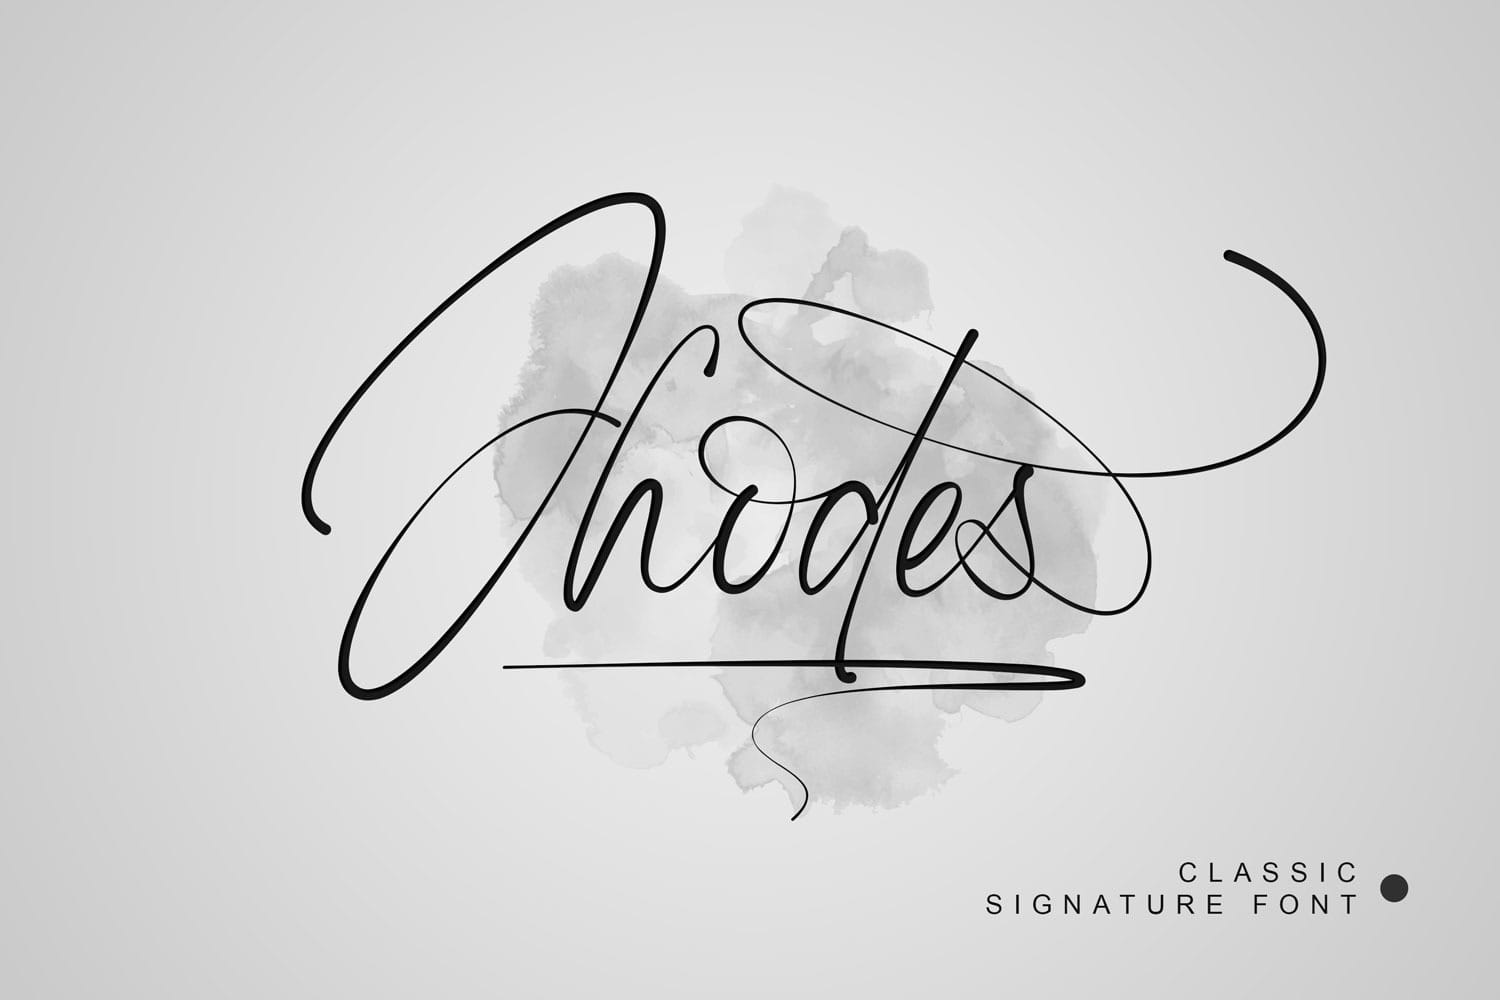 A classic signature font